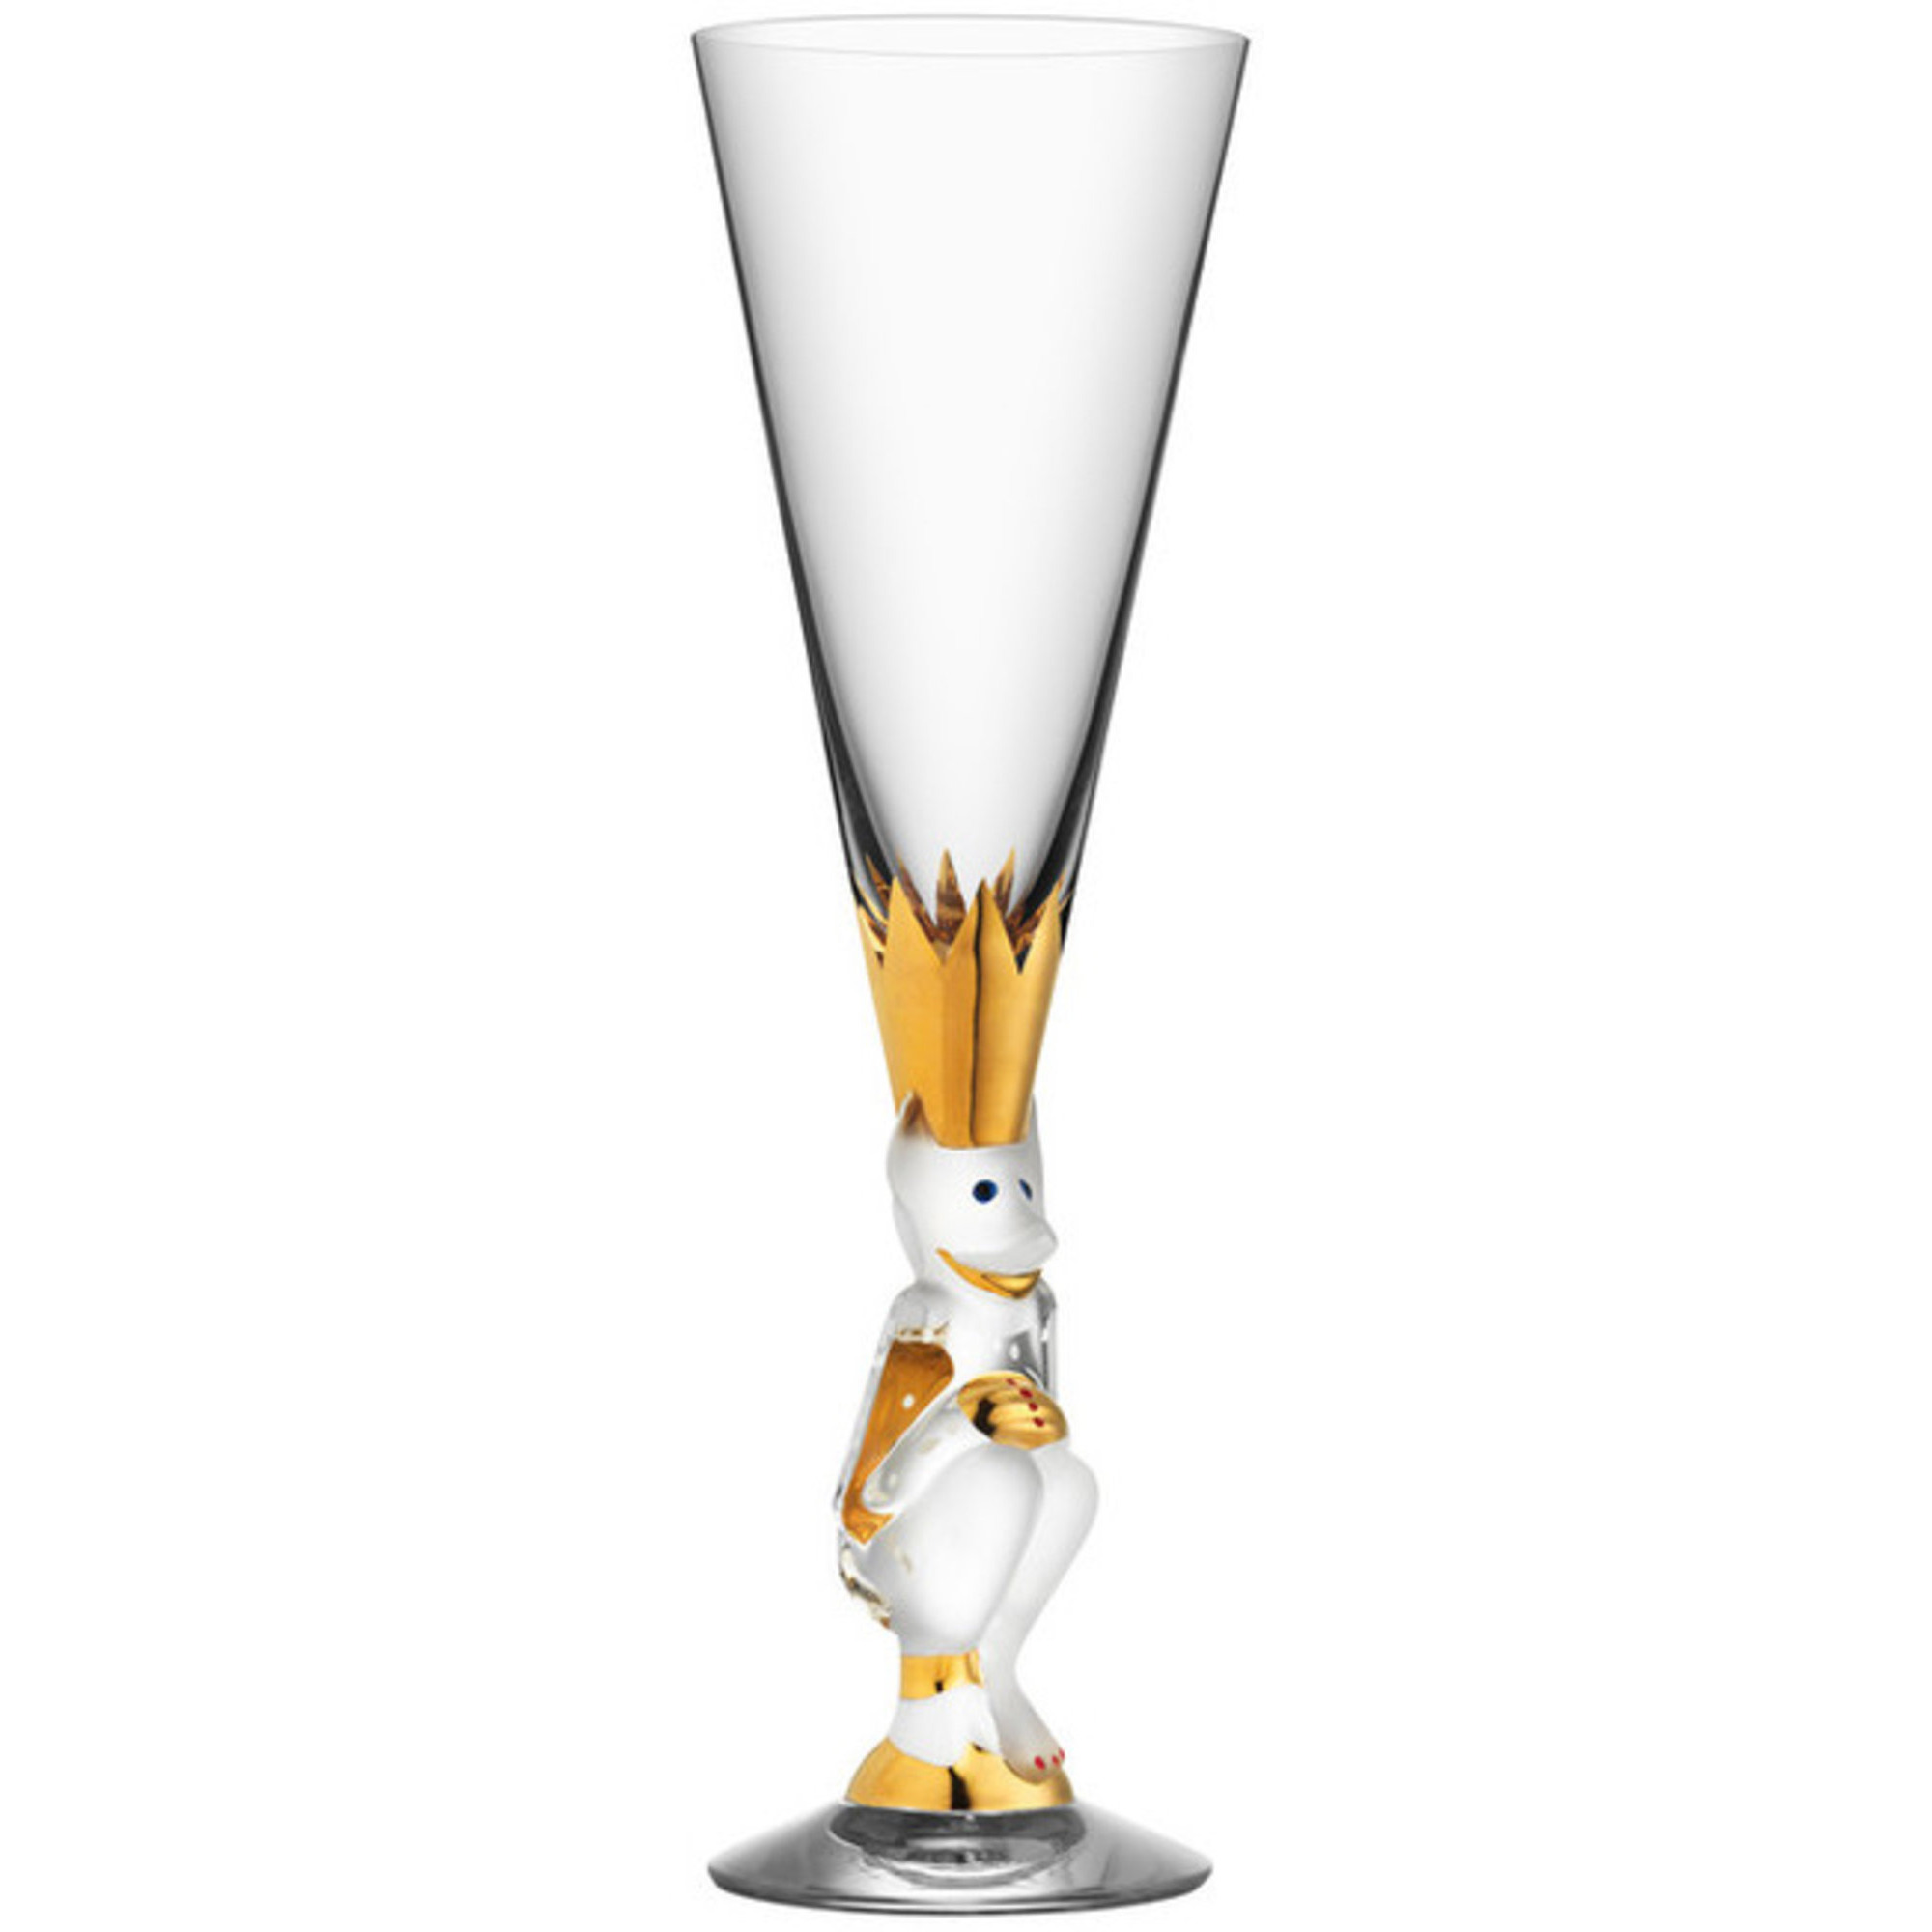 Orrefors Nobel The sparkling devil Champagneglas 19cl., klar